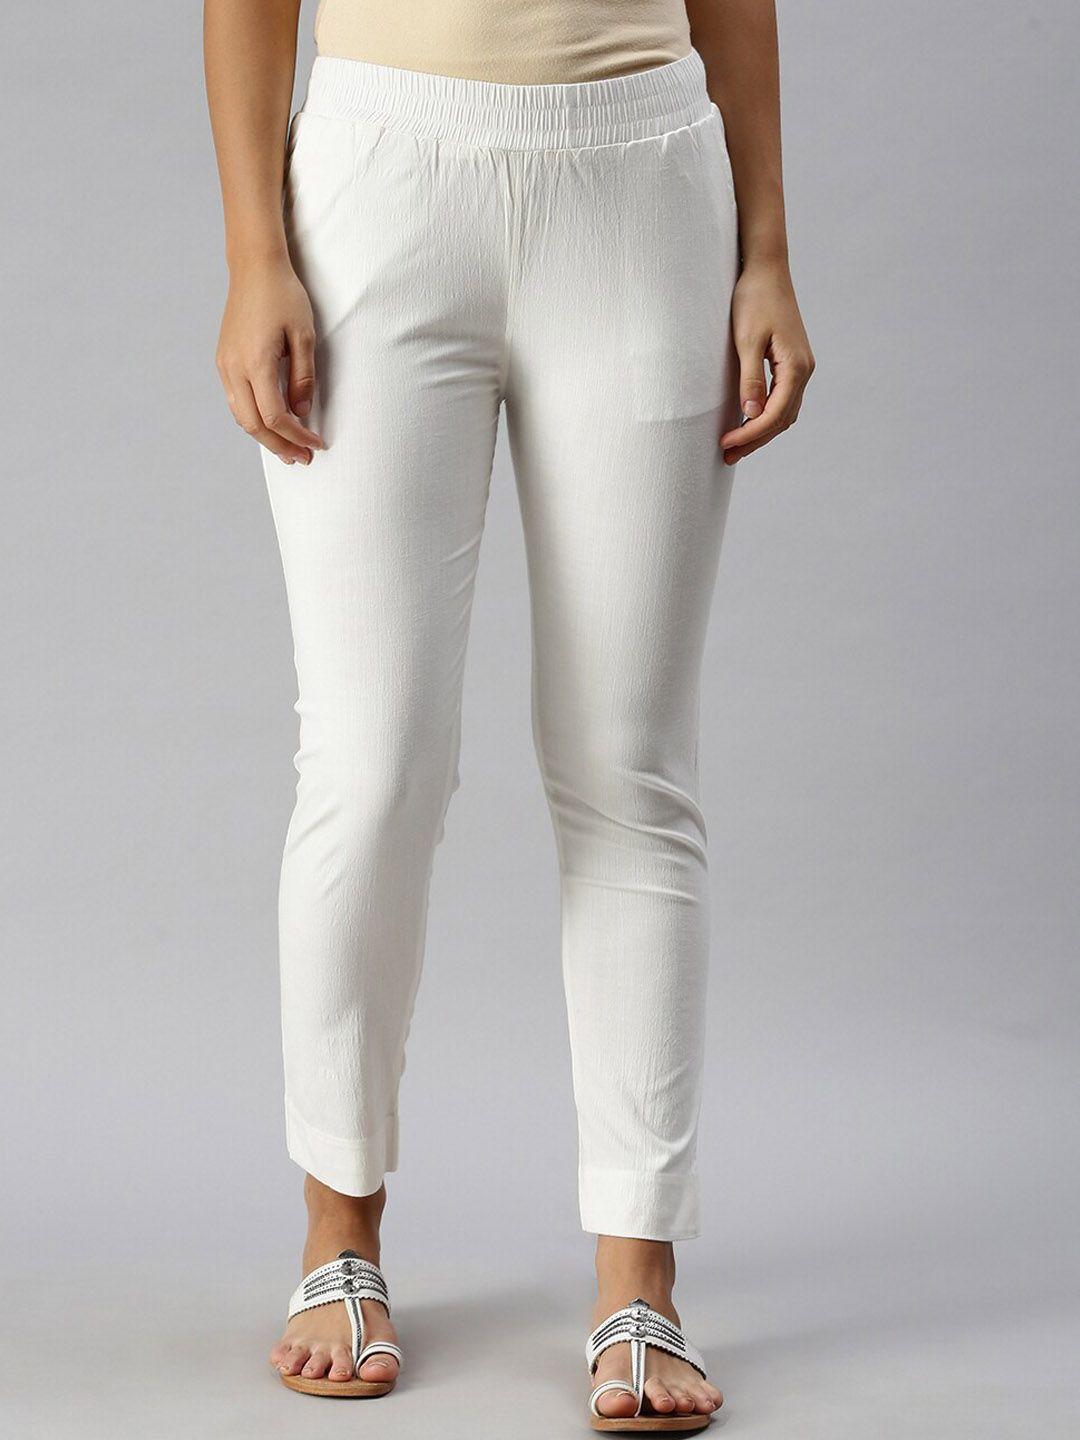 soch-women-off-white-slim-fit-trousers